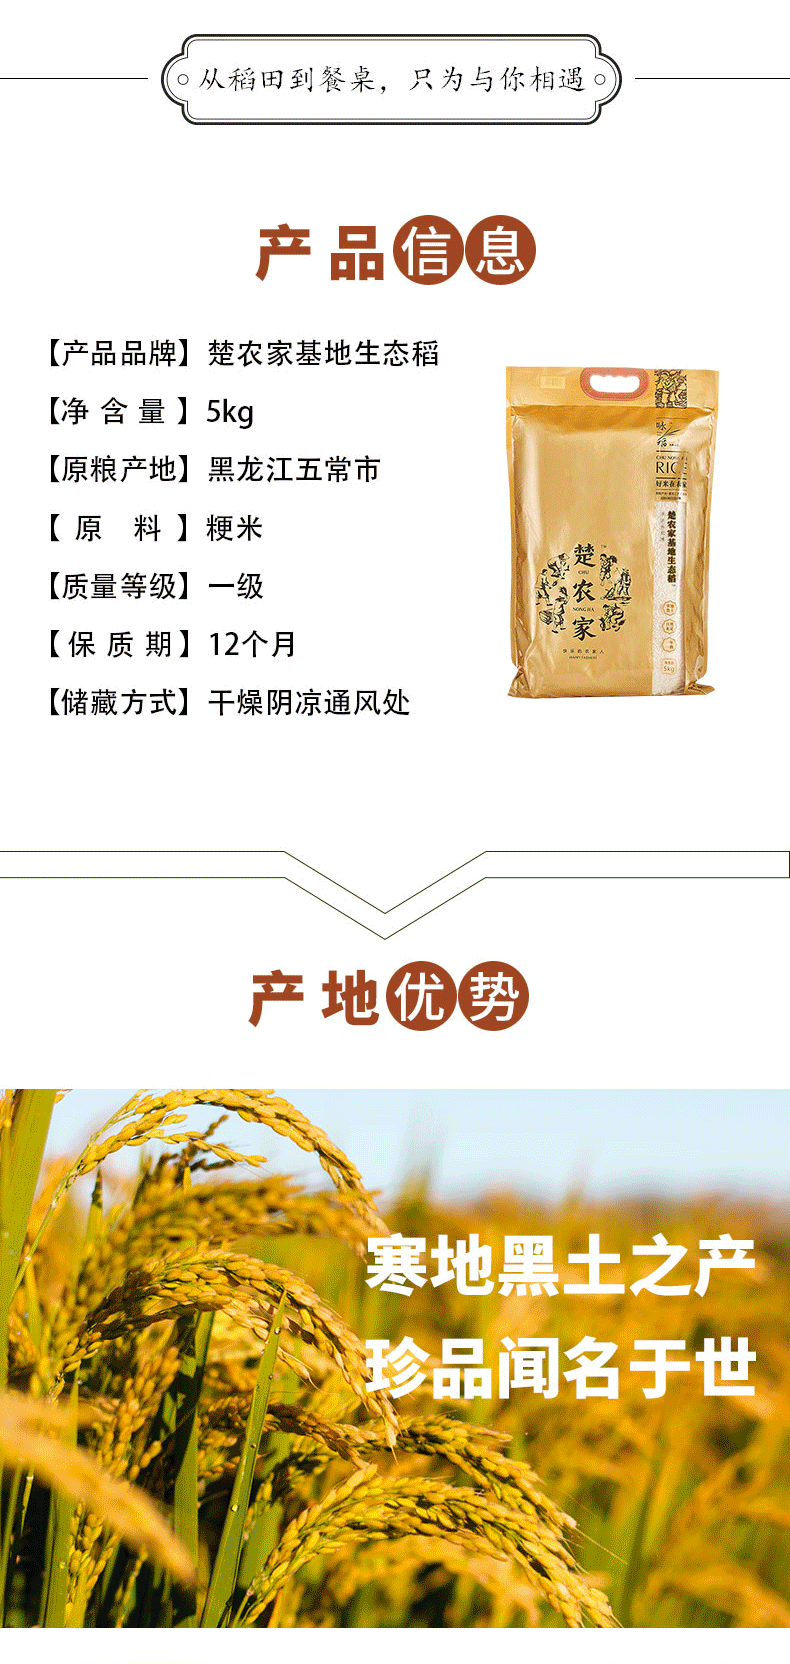 楚农家 楚农家基地生态稻5kg